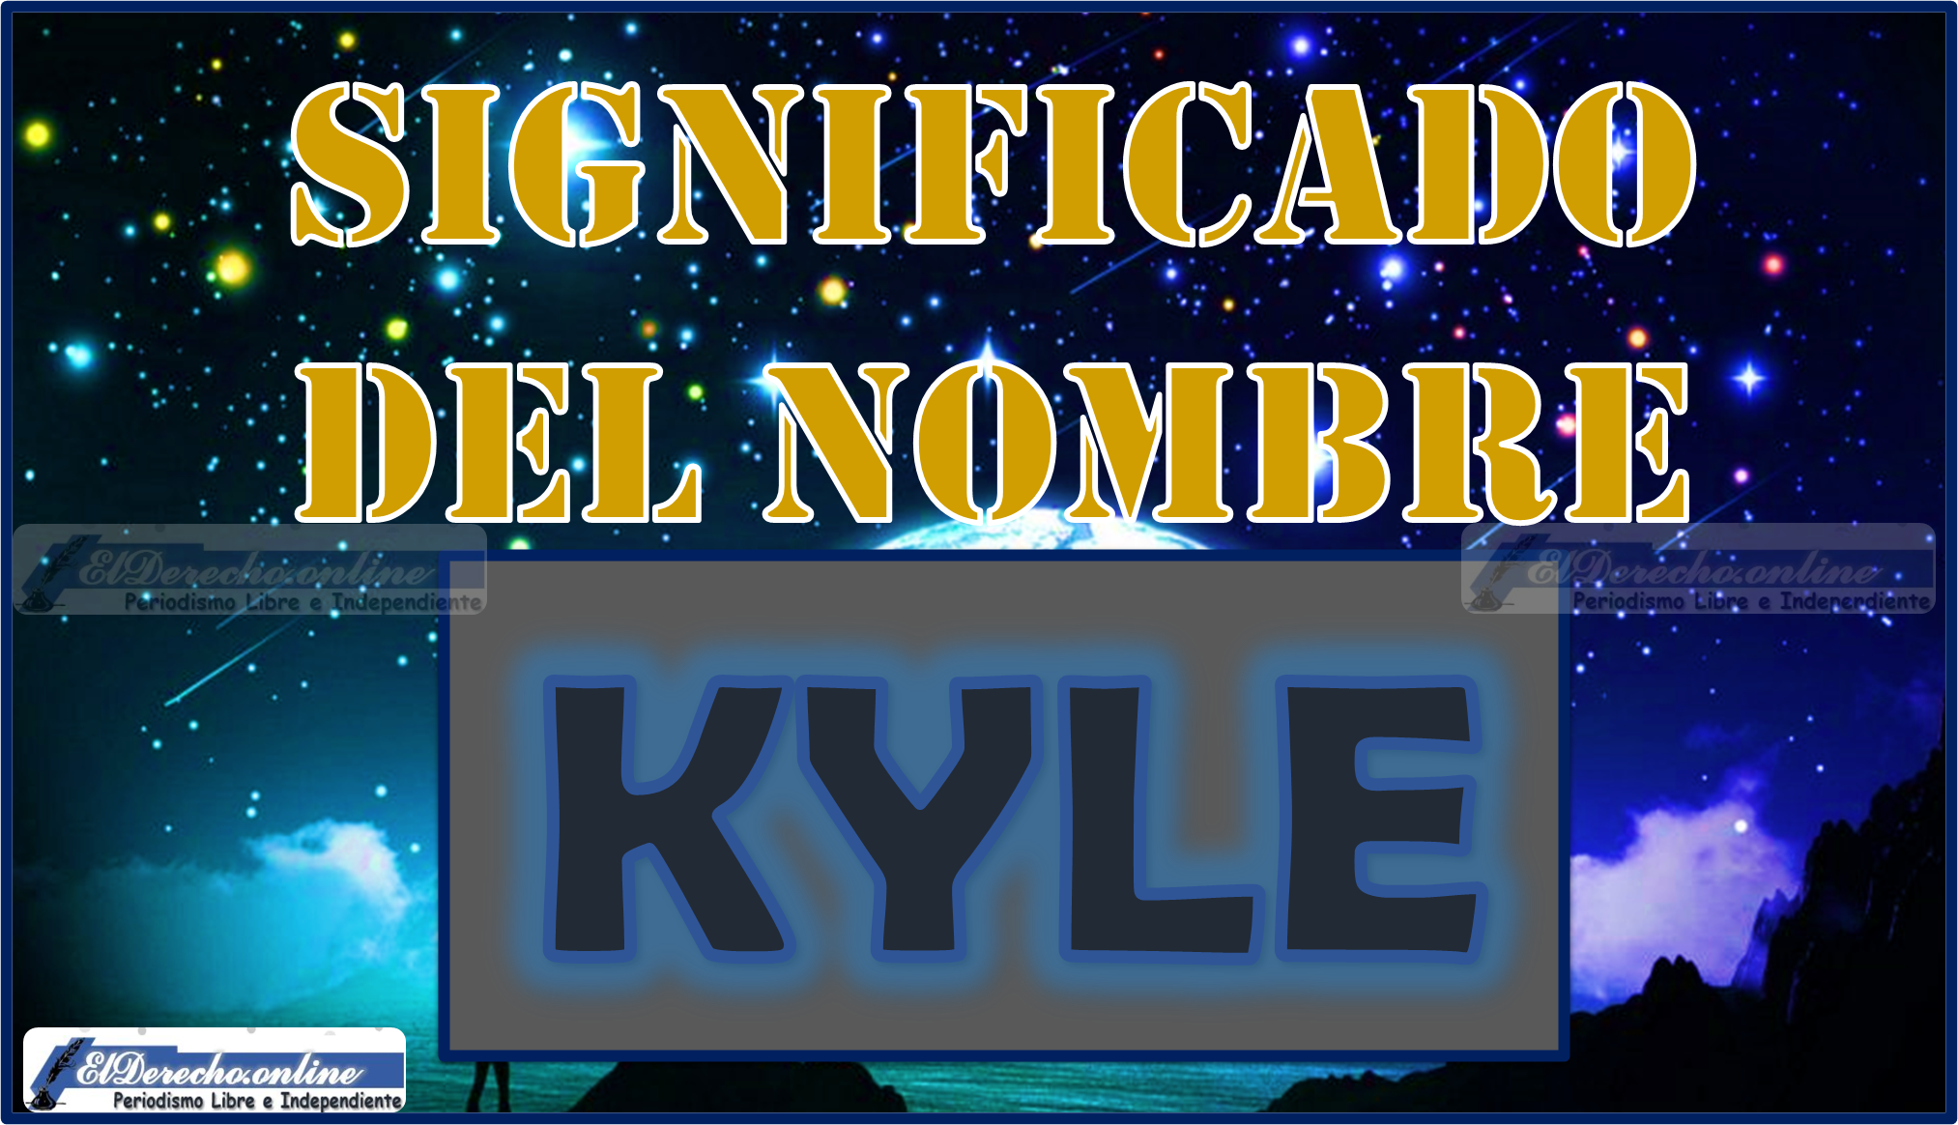 Significado del nombre Kyle, su origen y más